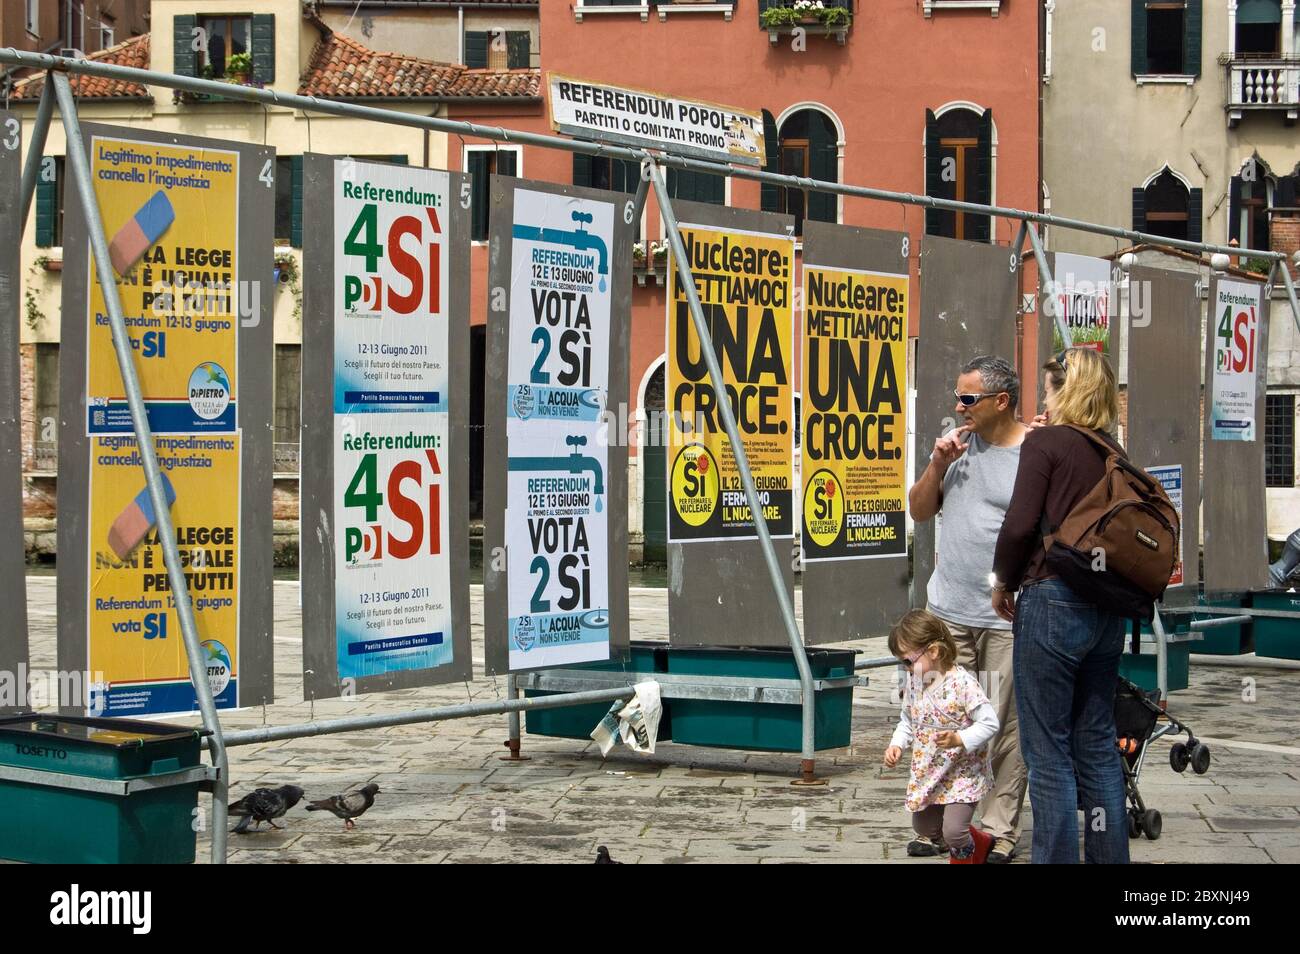 Venedig, Italien - 9. Juni 2011: Eine Familie liest politische Plakate vor den italienischen Referenden im Juni 2011 über die Atomkraft, w Stockfoto